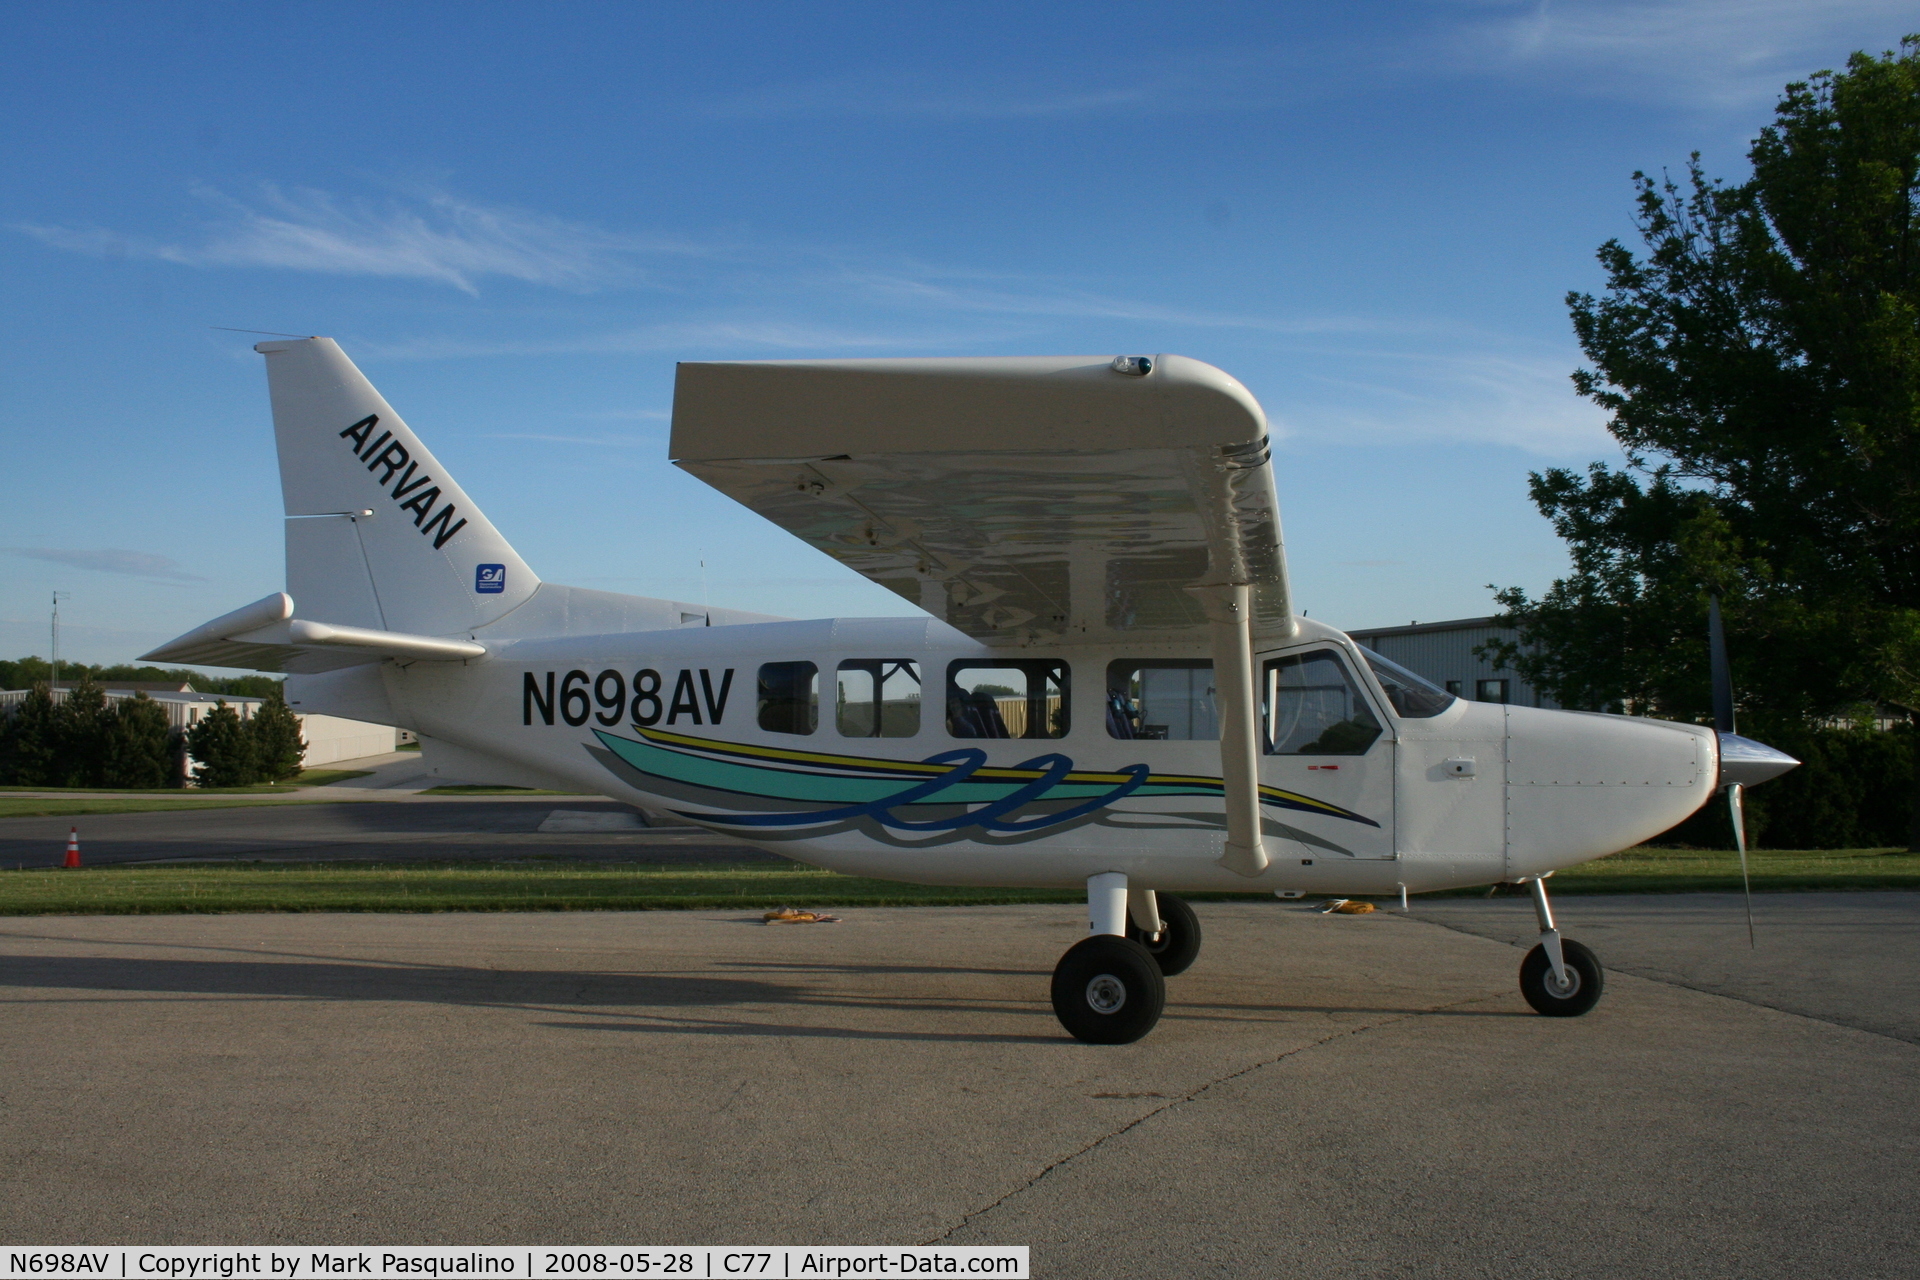 N698AV, 2006 Gippsland GA-8 Airvan C/N GA8-06-098, Gippsland GA-8